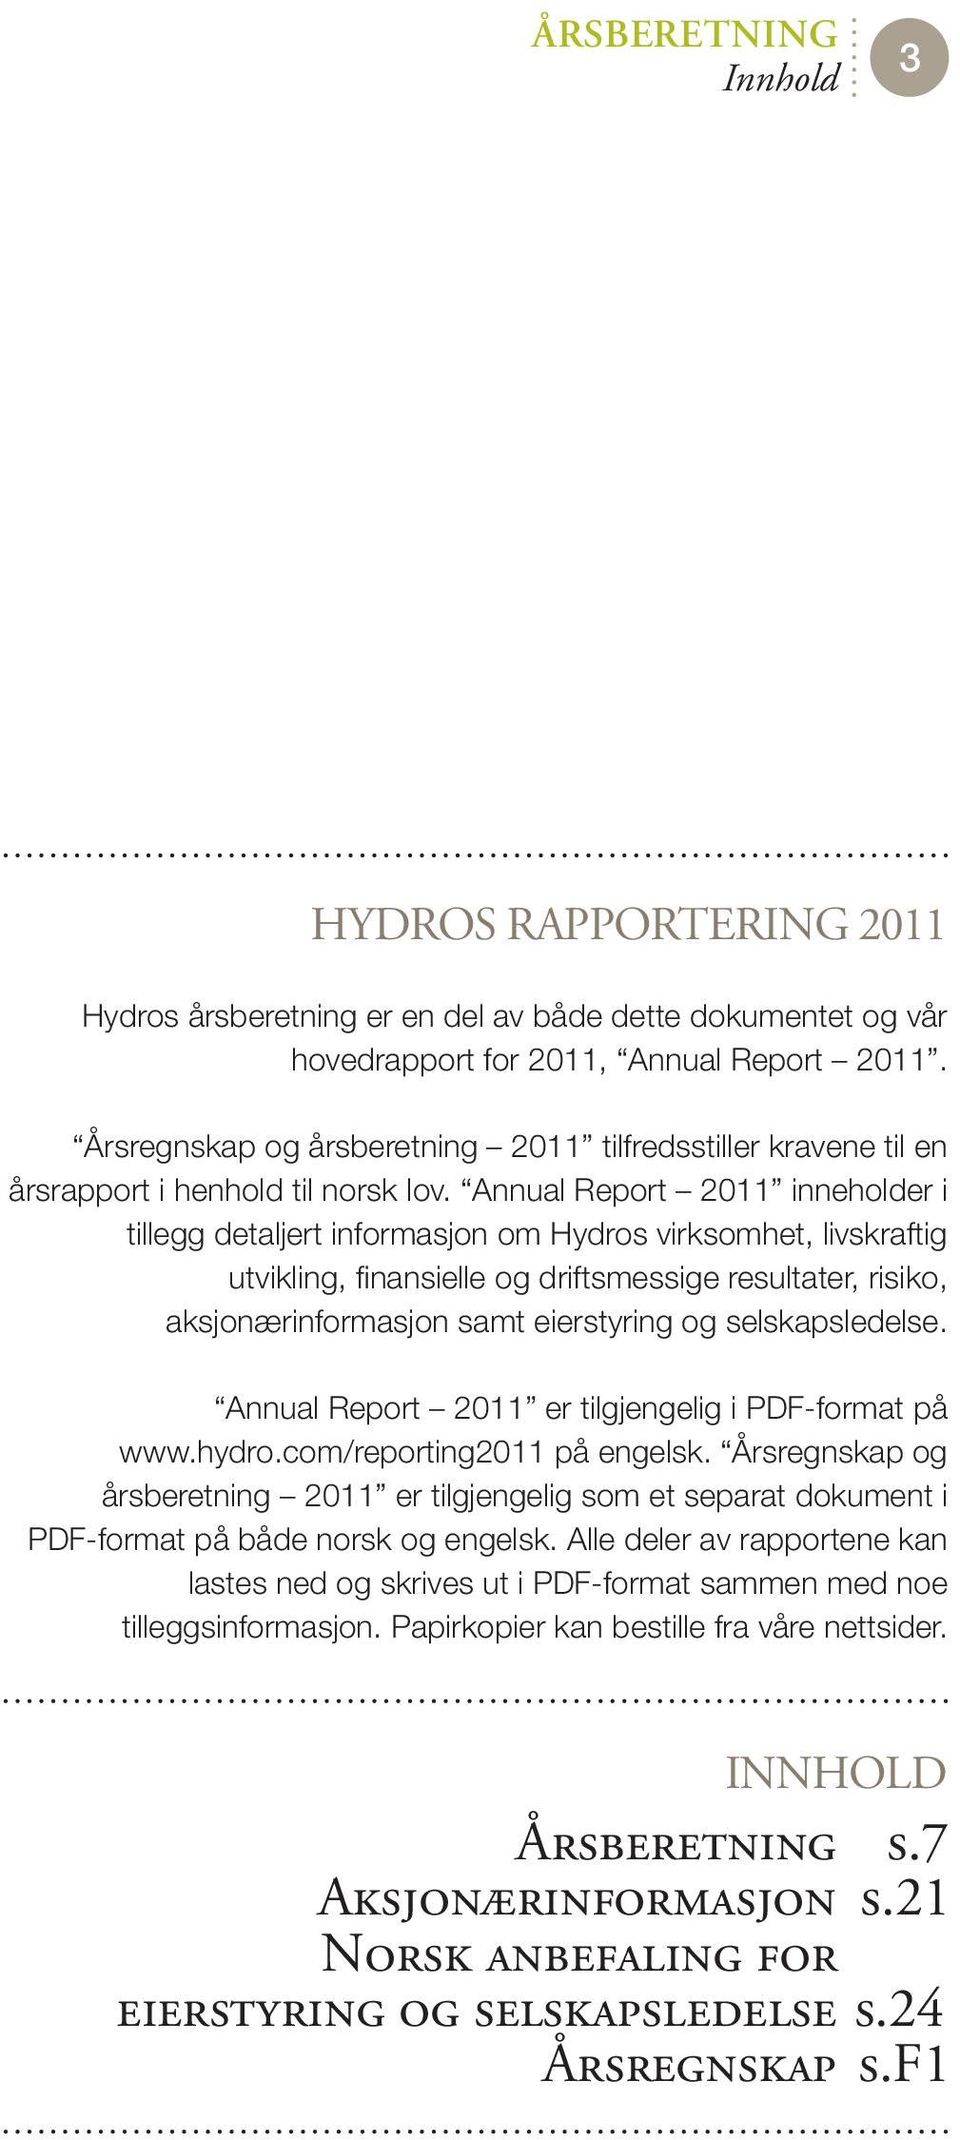 Annual Report 2011 inneholder i tillegg detaljert informasjon om Hydros virksomhet, livskraftig utvikling, finansielle og driftsmessige resultater, risiko, aksjonærinformasjon samt eierstyring og